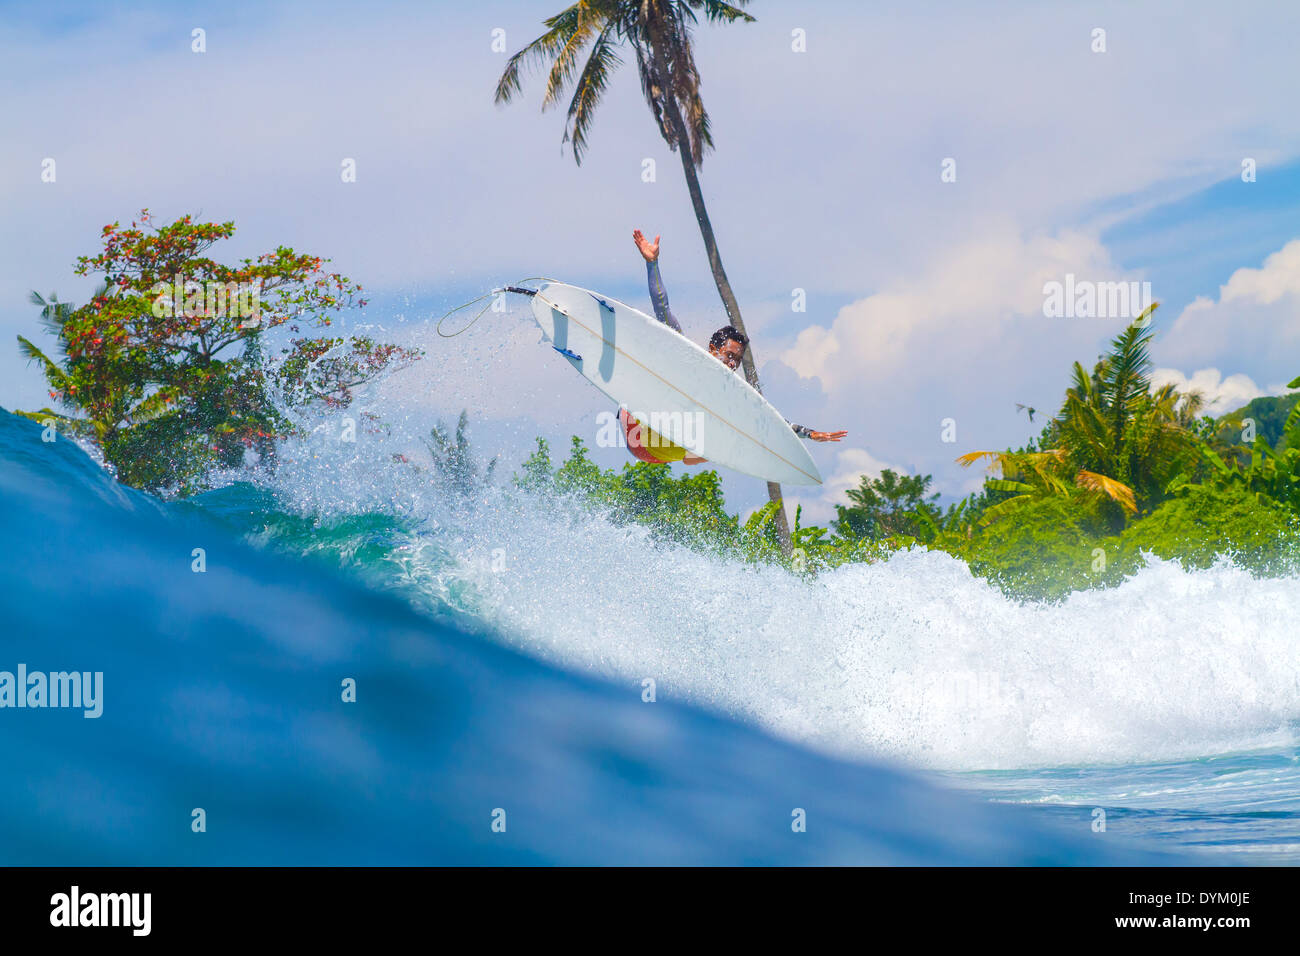 Bild eine Welle zu surfen. Insel Bali. Indonesien. Stockfoto